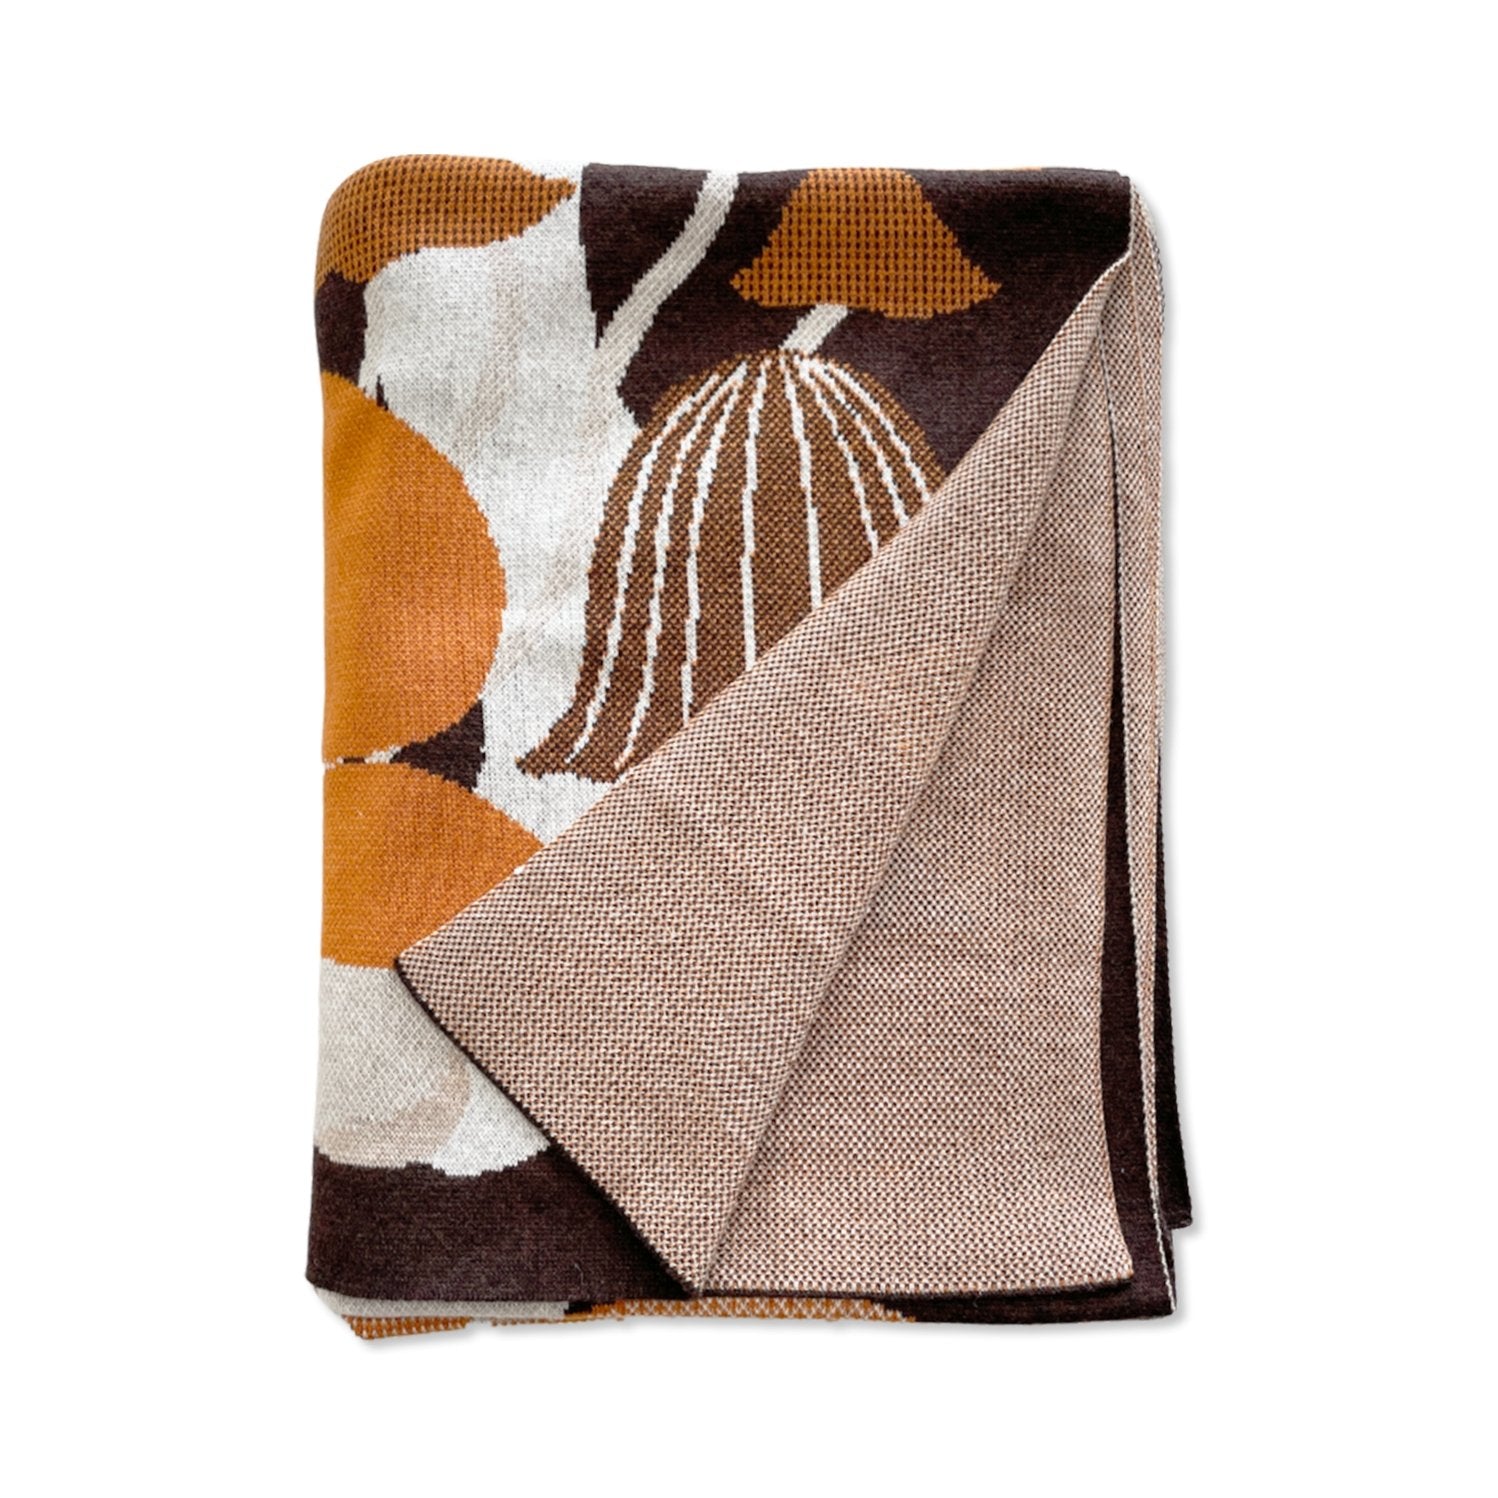 [PRE-ORDER] Terra & Cottage Cotton Blend Knit Blanket - Mushroom Mix - Green Philosophy Co.